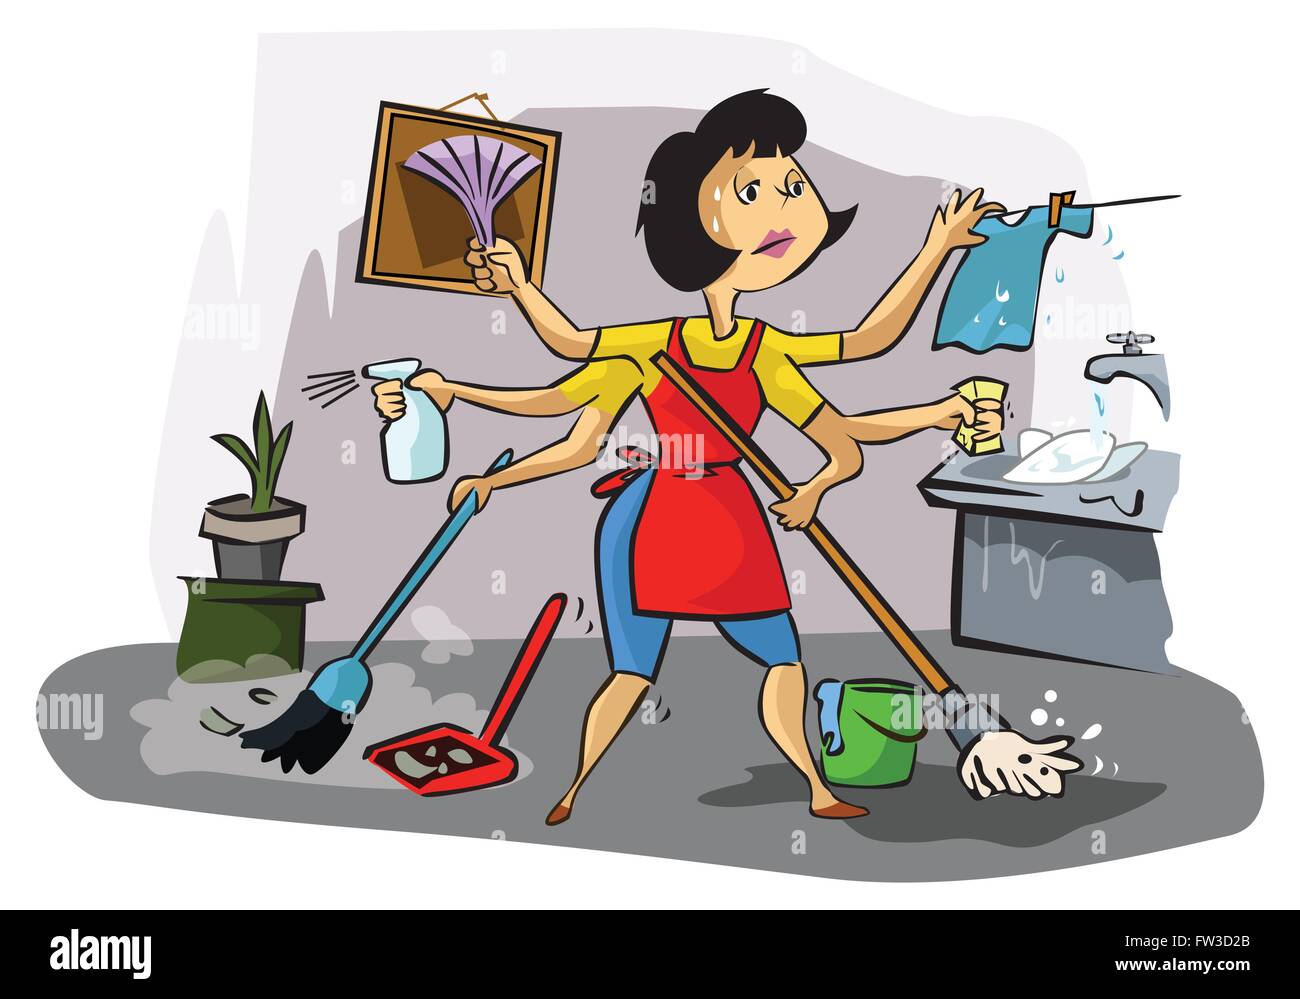 Наведу порядок видео. Стирка уборка готовка. Домохозяйка иллюстрация. Женщина уборка. Женщина вся в домашних делах.